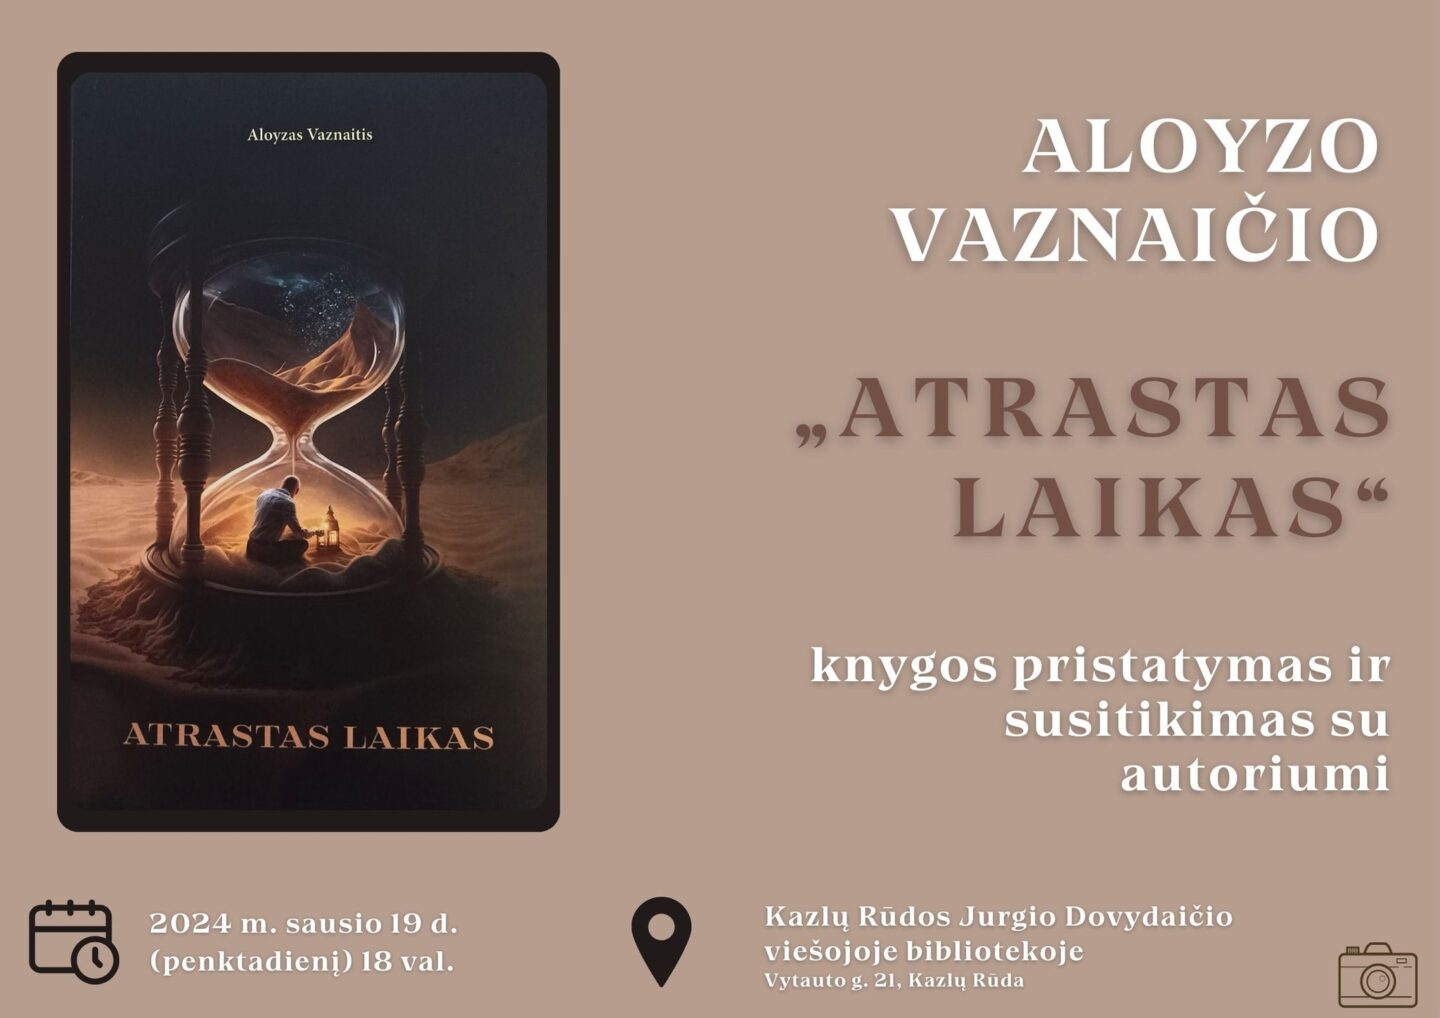 Aloyzo Vaznaičio poezijos rinkinio „Atrastas laikas“ pristatymas